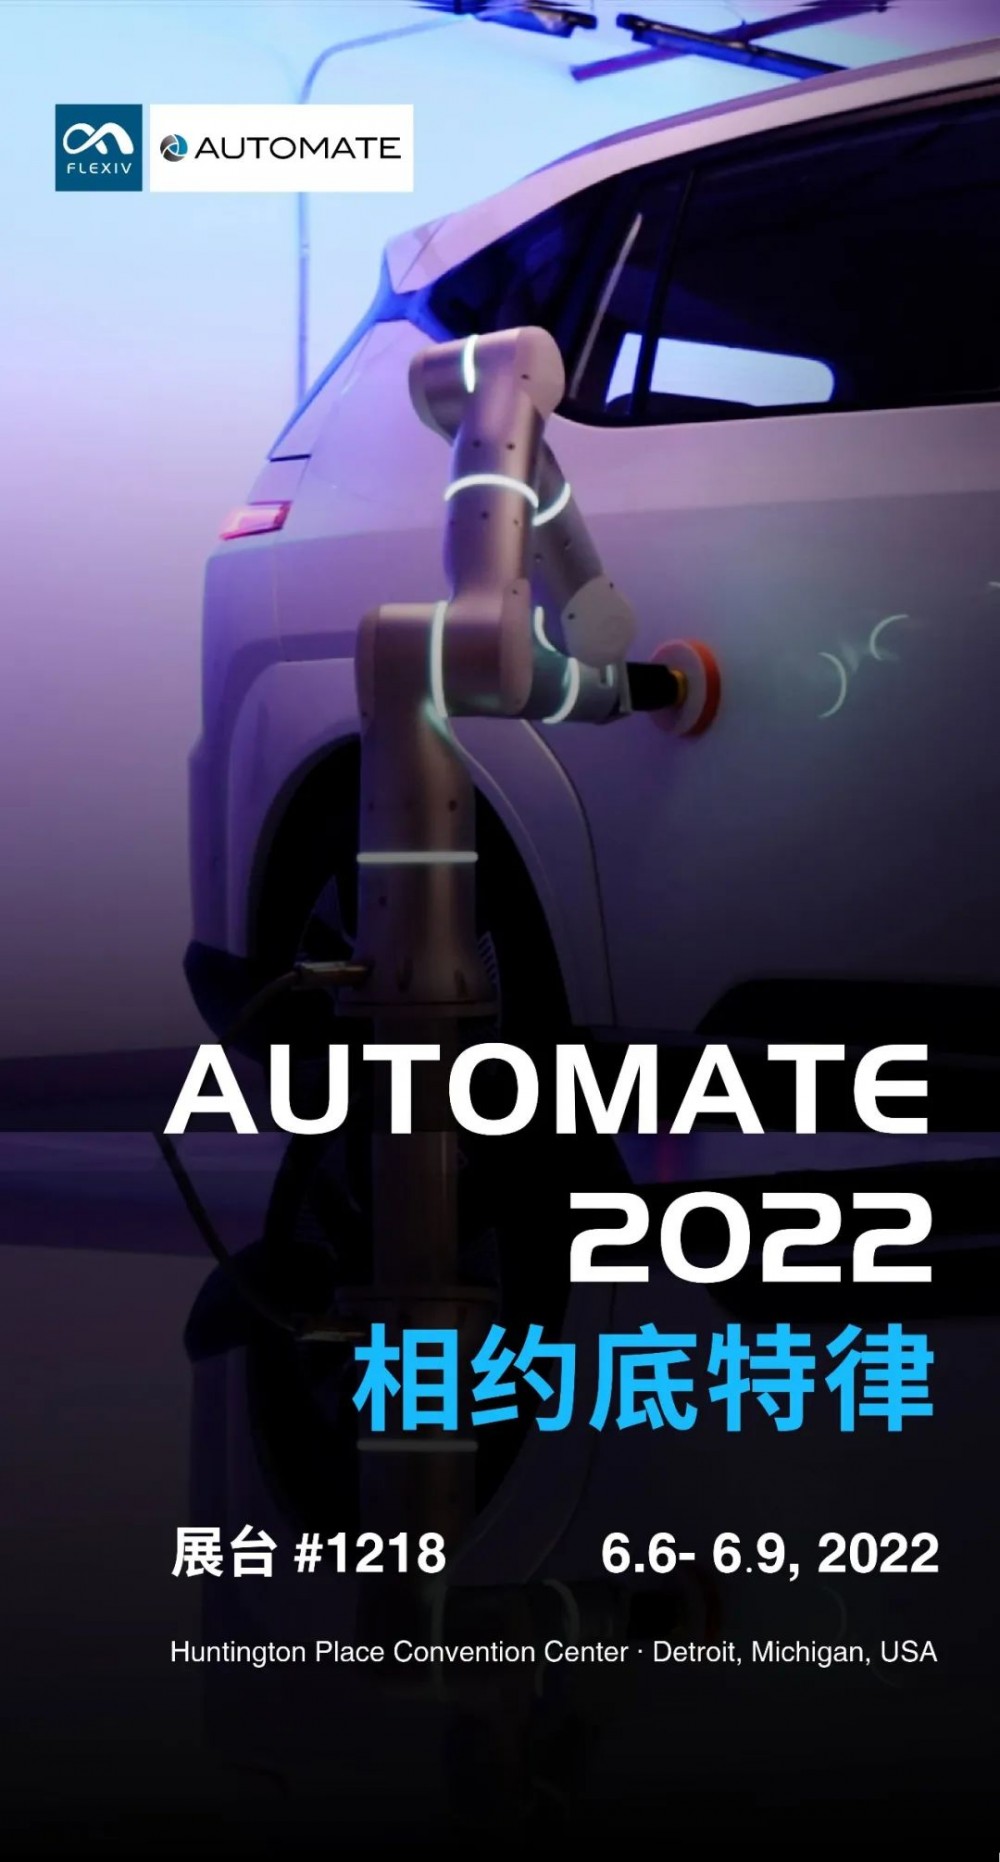 【非夕】预告 | 非夕将参展北美规模最大的自动化展会AUTOMATE 2022